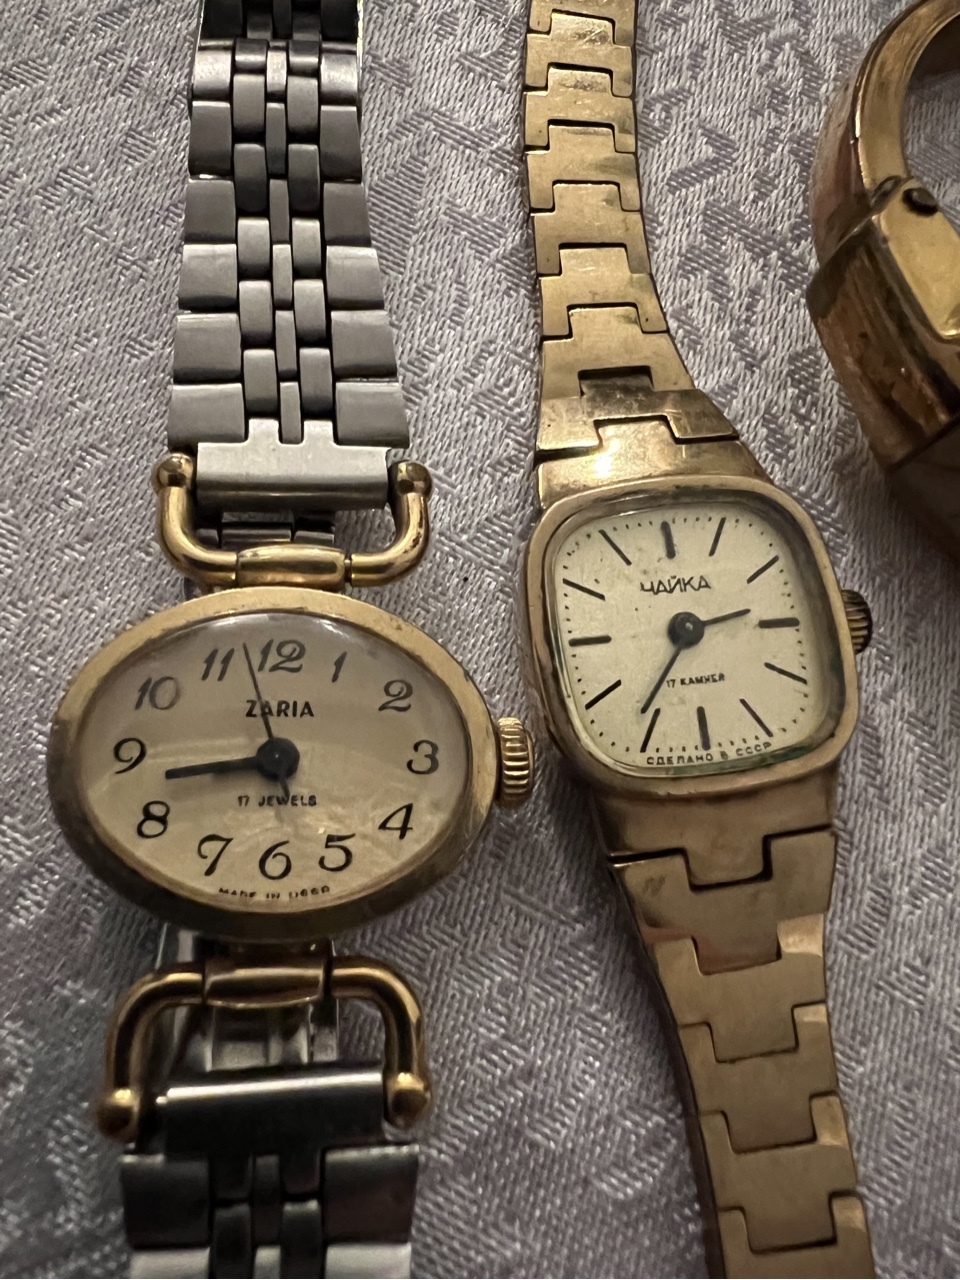 Zdjęcie oferty: Pakiet trzech zegarków Czajka Zaria Slava